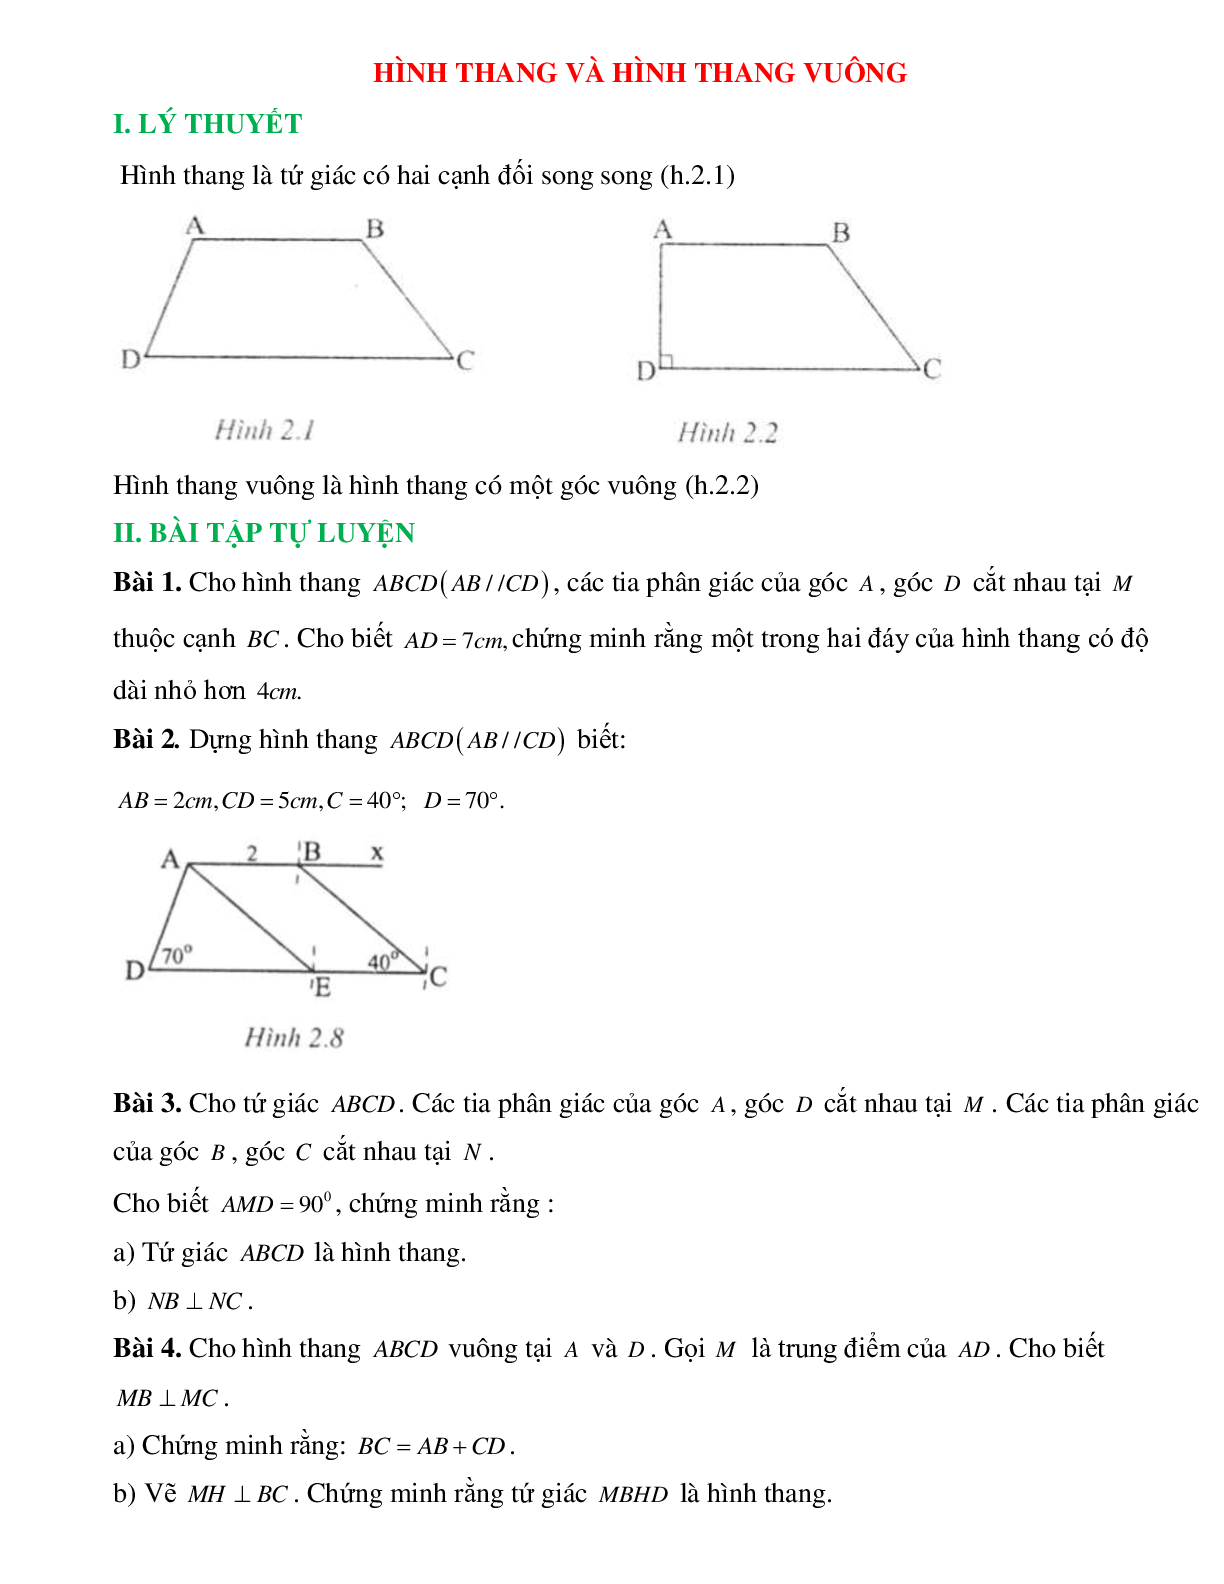 Hình thang và hình thang vuông (trang 1)